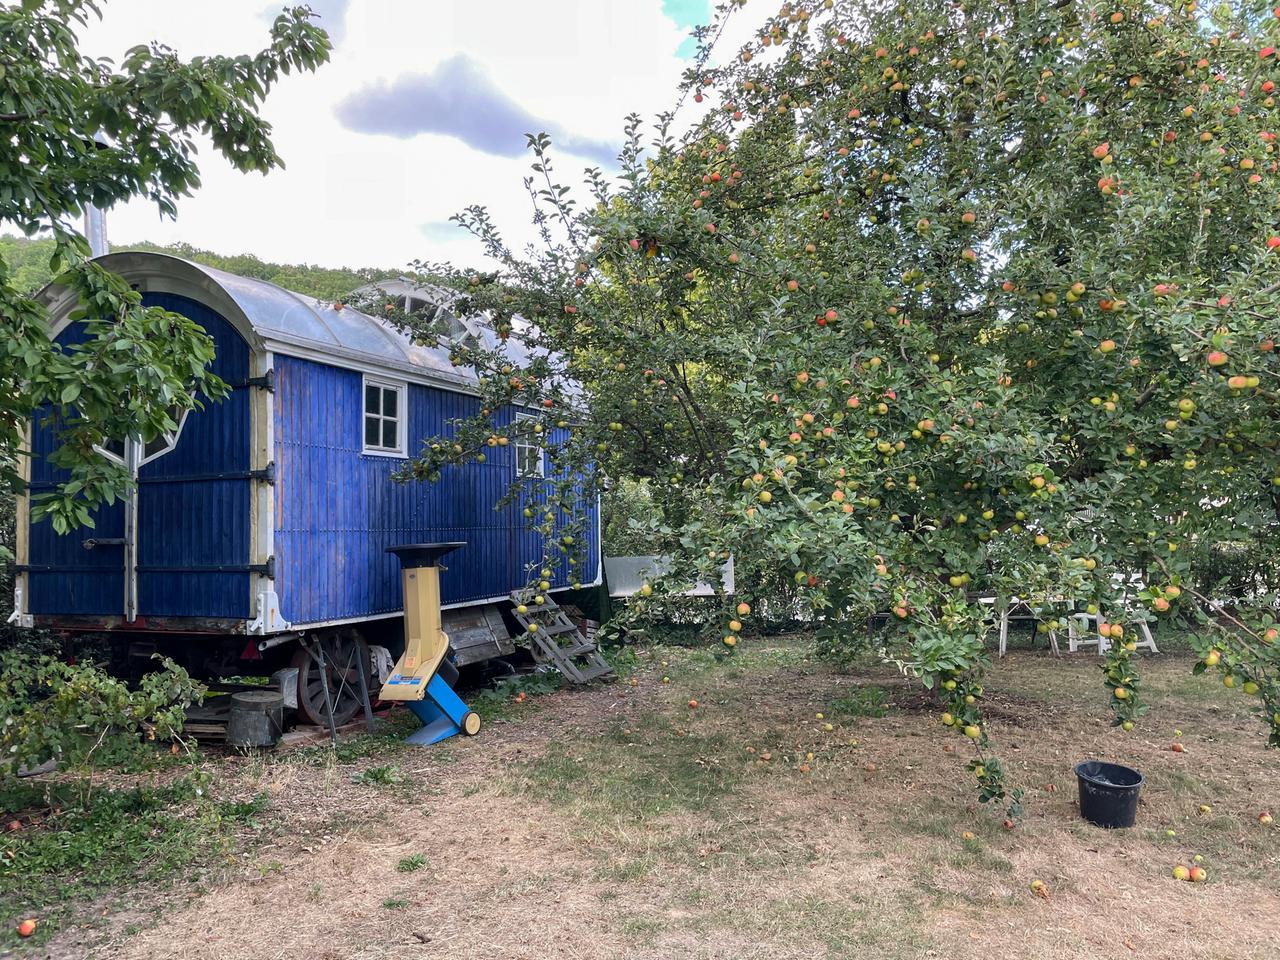 Blauer Bauwagen hinter einem Apfelbaum mit reifen Früchten in einem Garten